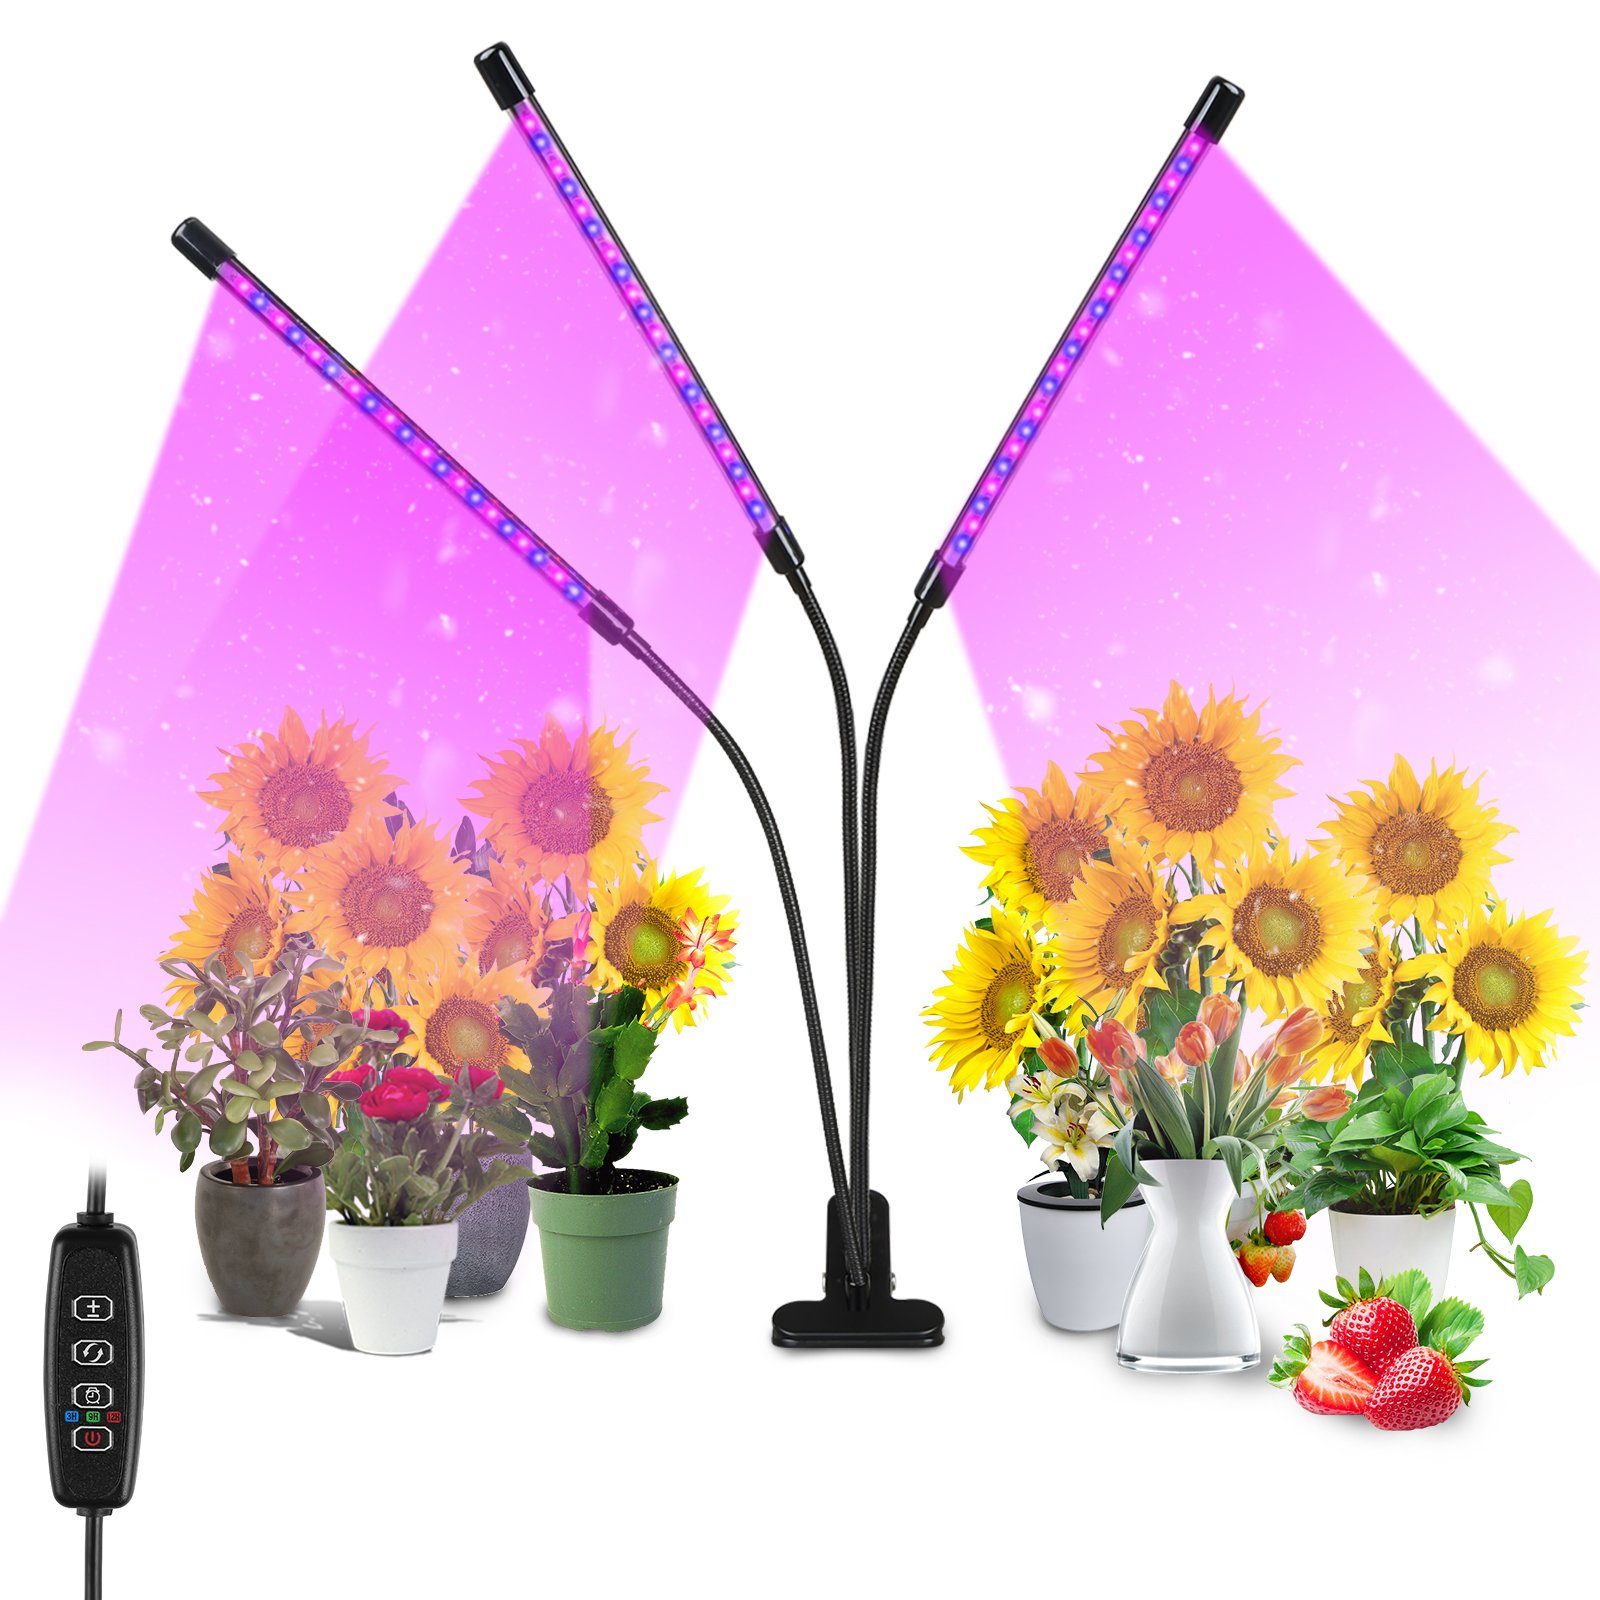 Lospitch Pflanzenlampe 3 Köpfe LED Pflanzenlicht 30W Dimmbar Vollspektrum Wachstumslampe, Grow Light mit 3 Licht Modus, 10 Helligkeitsstufen | Pflanzenlampen